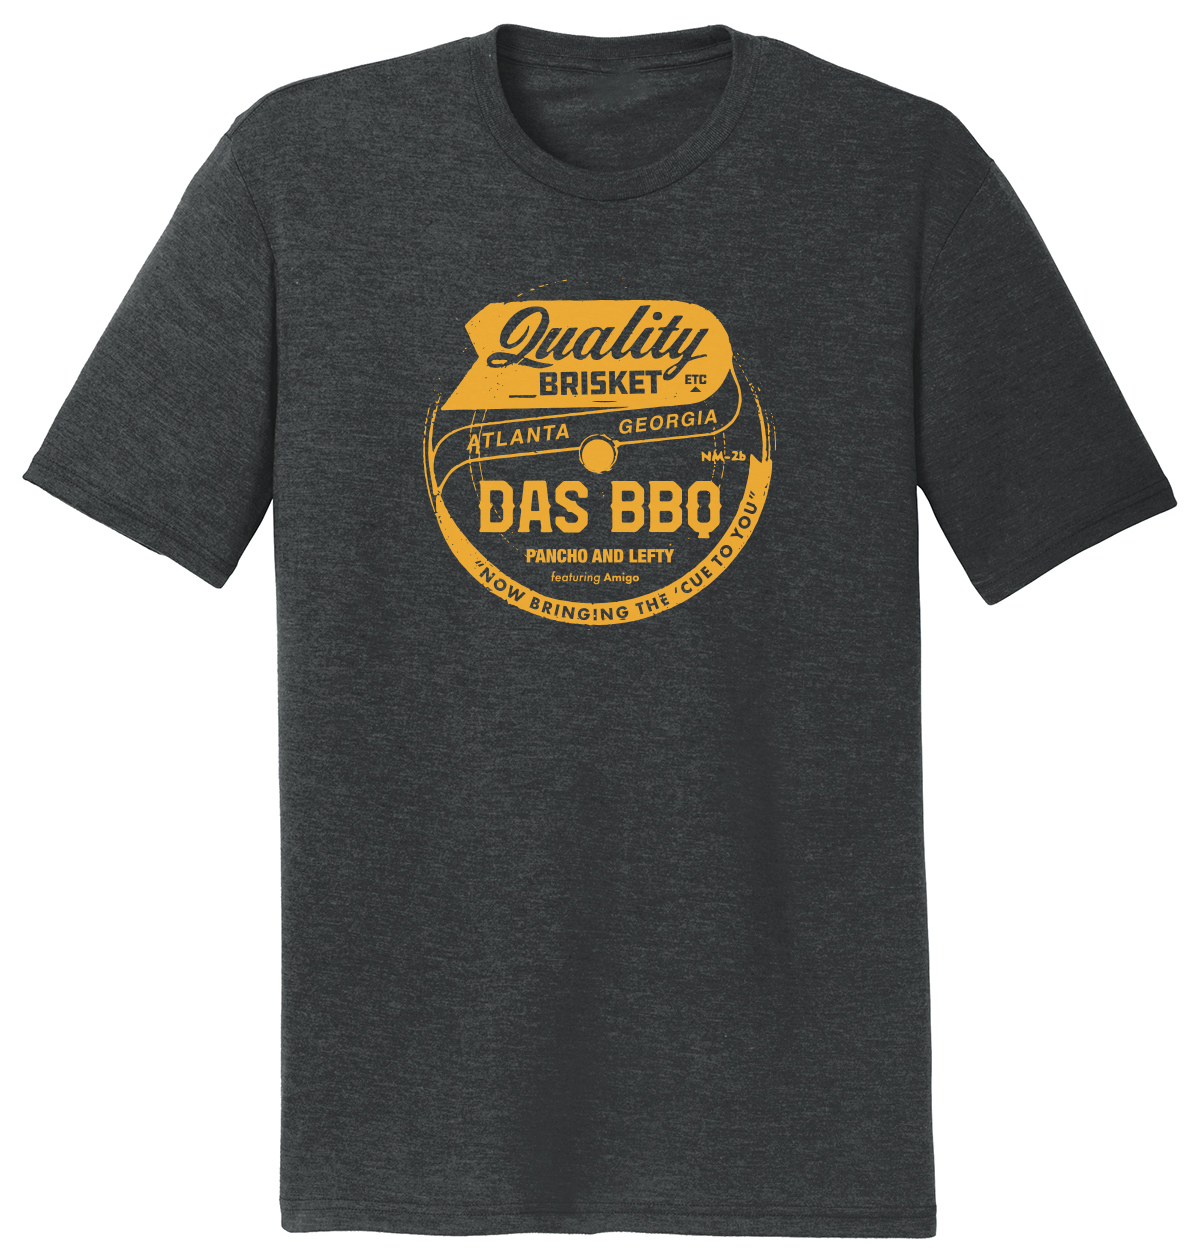 DAS BBQ - We Give a Shirt